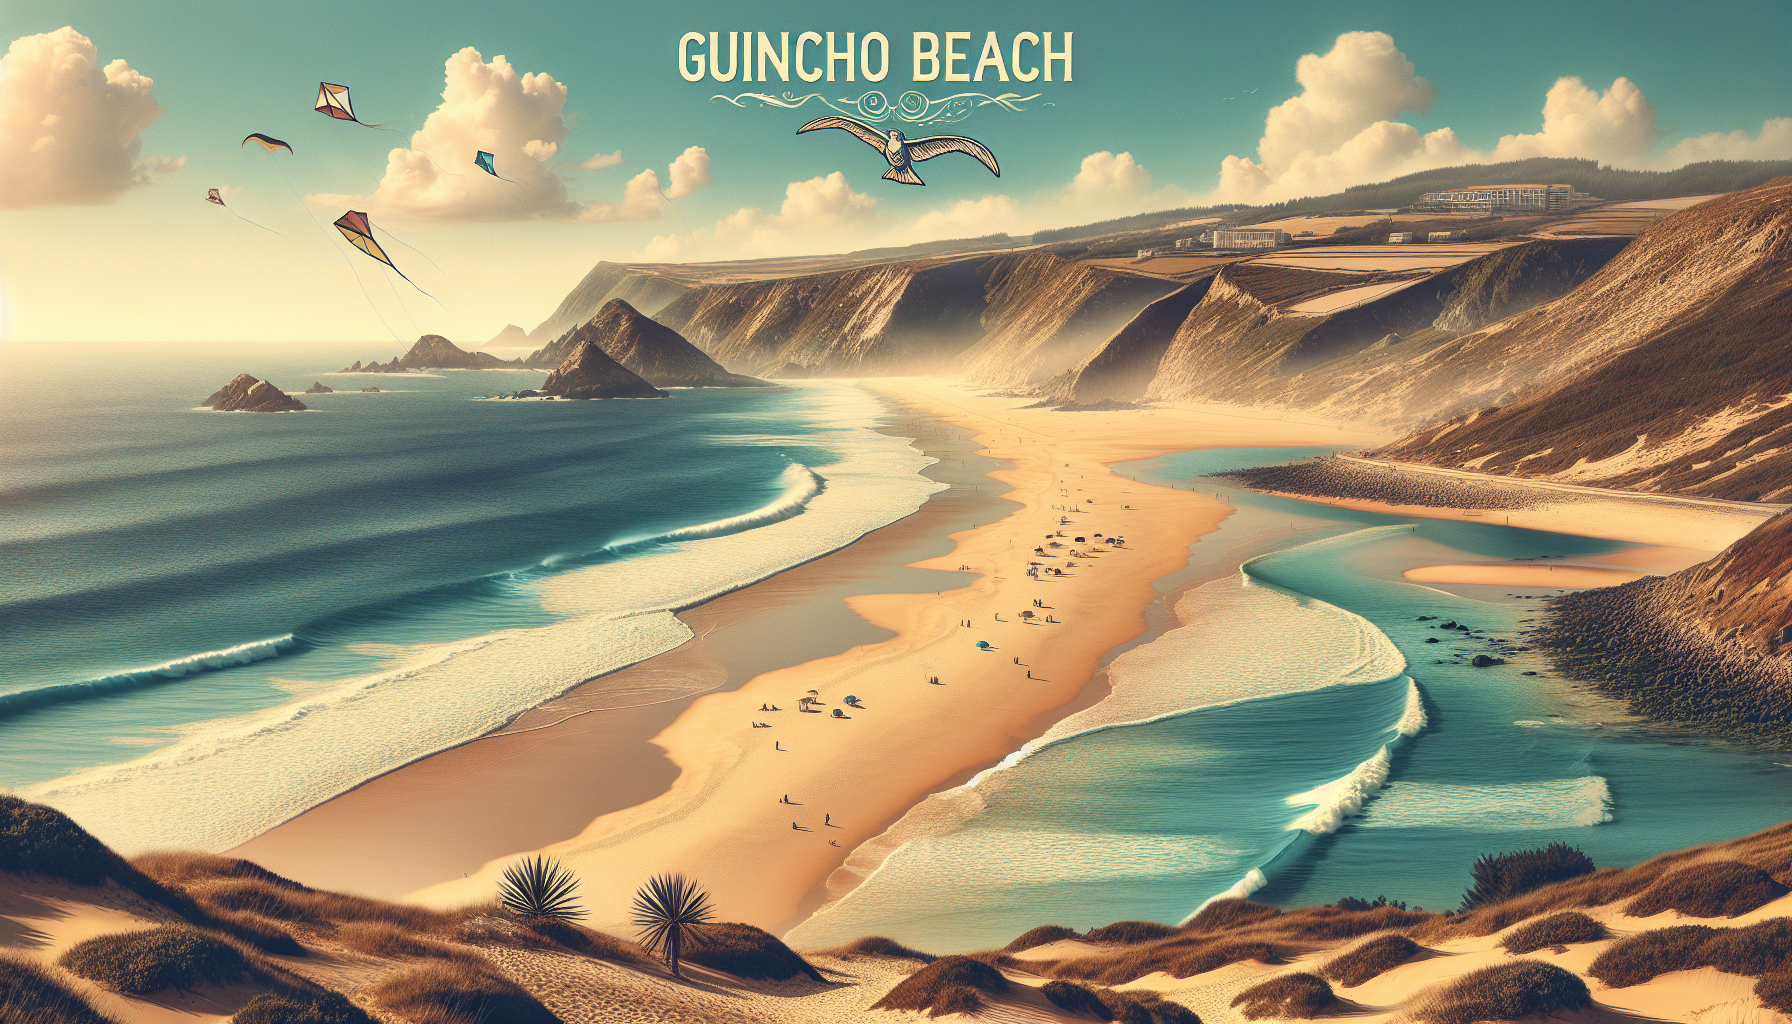 Tudo Sobre a Praia do Guincho: O Guia Completo para Desfrutar do Paraíso do Surf em Portugal